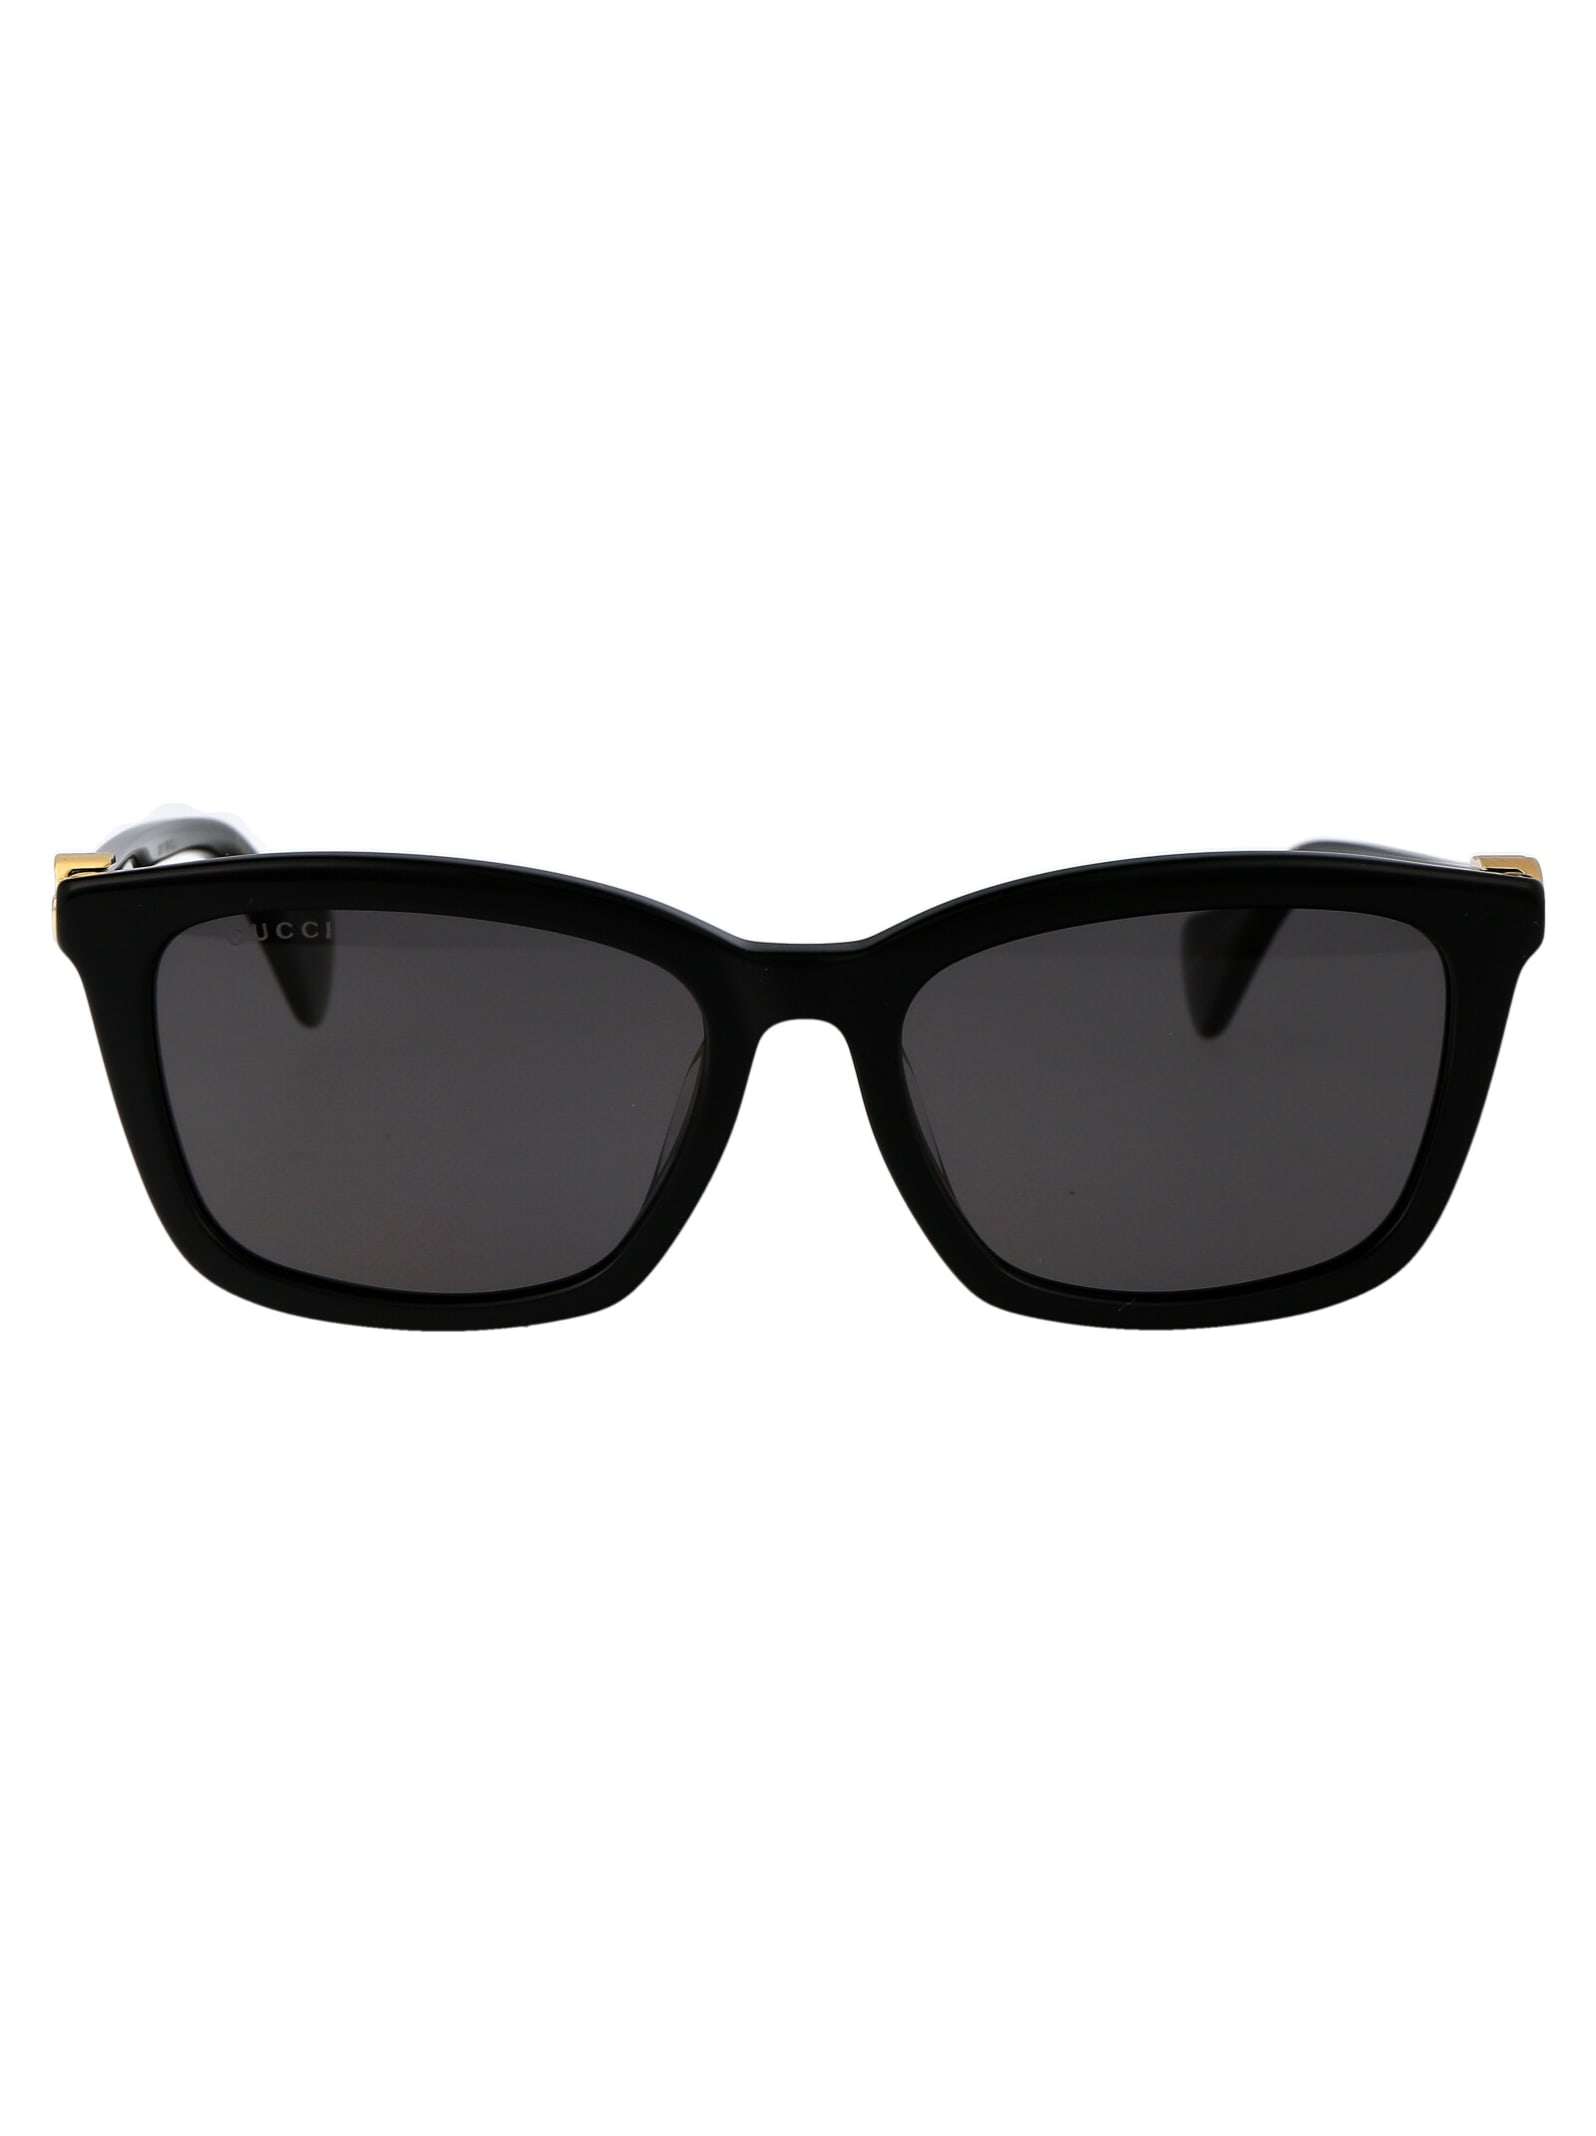 Gg1596sk Sunglasses